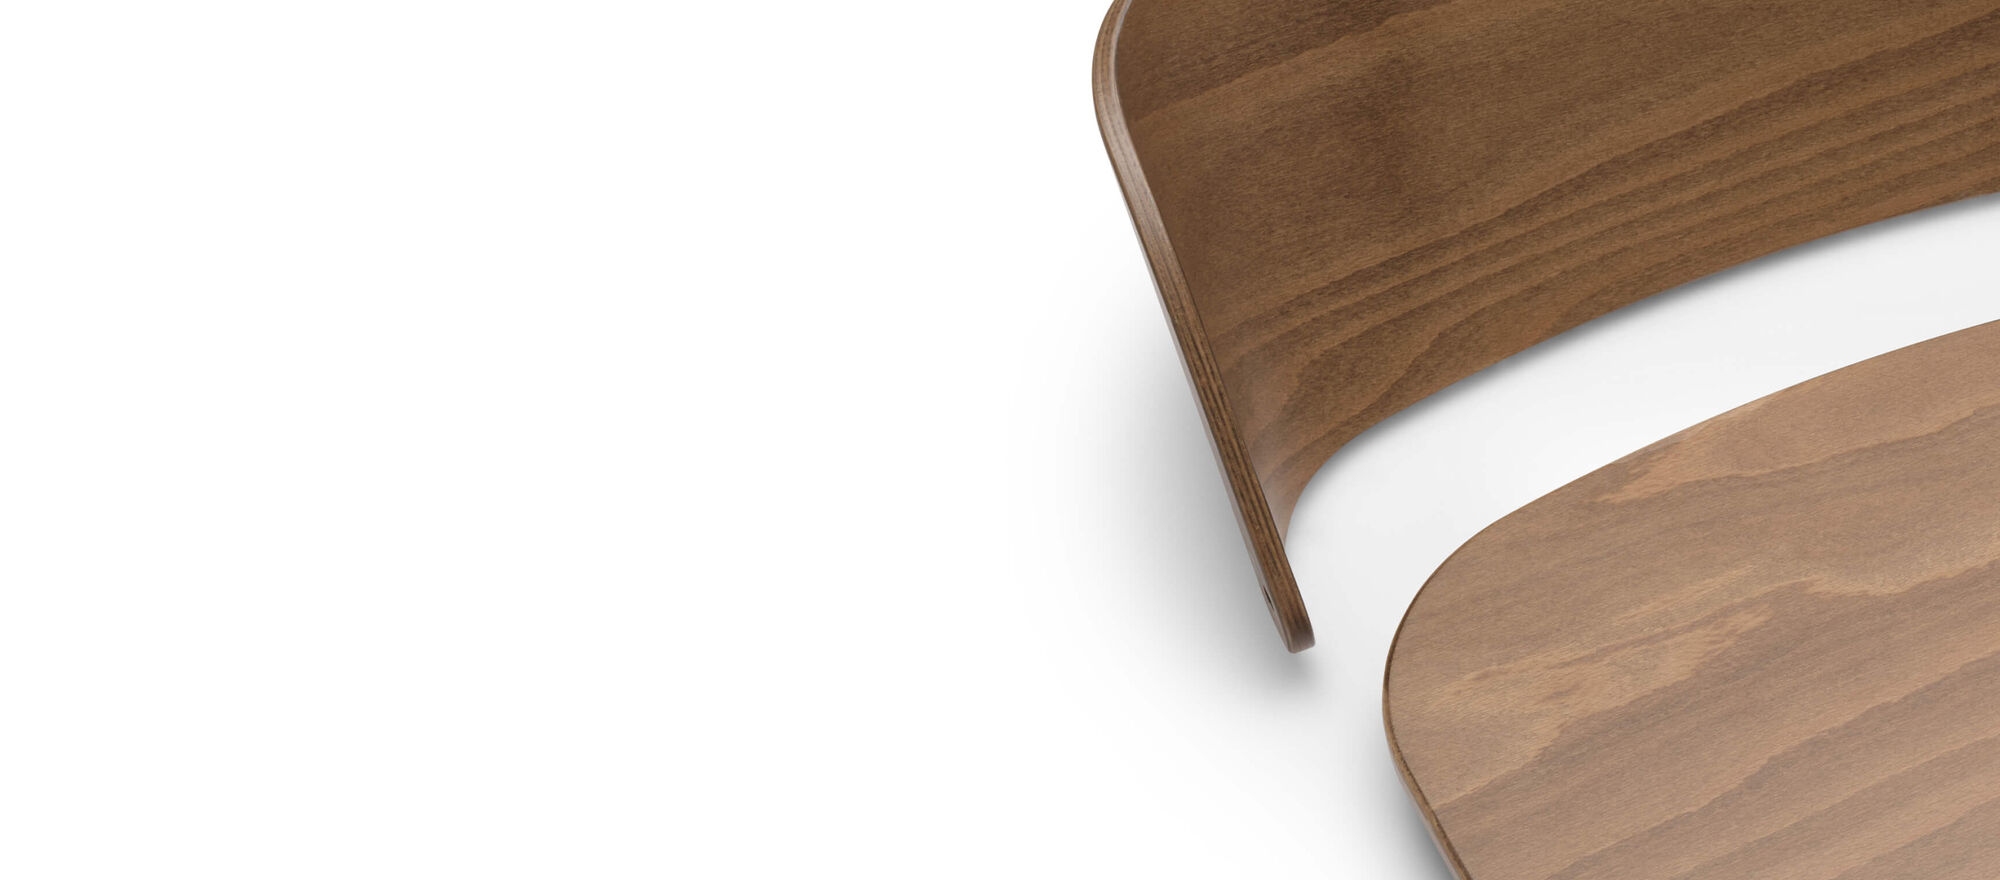 Schienale e seduta staccati della sedia evolutiva Bugaboo Giraffe, realizzati in legno naturale con finitura lucida di alta qualità.